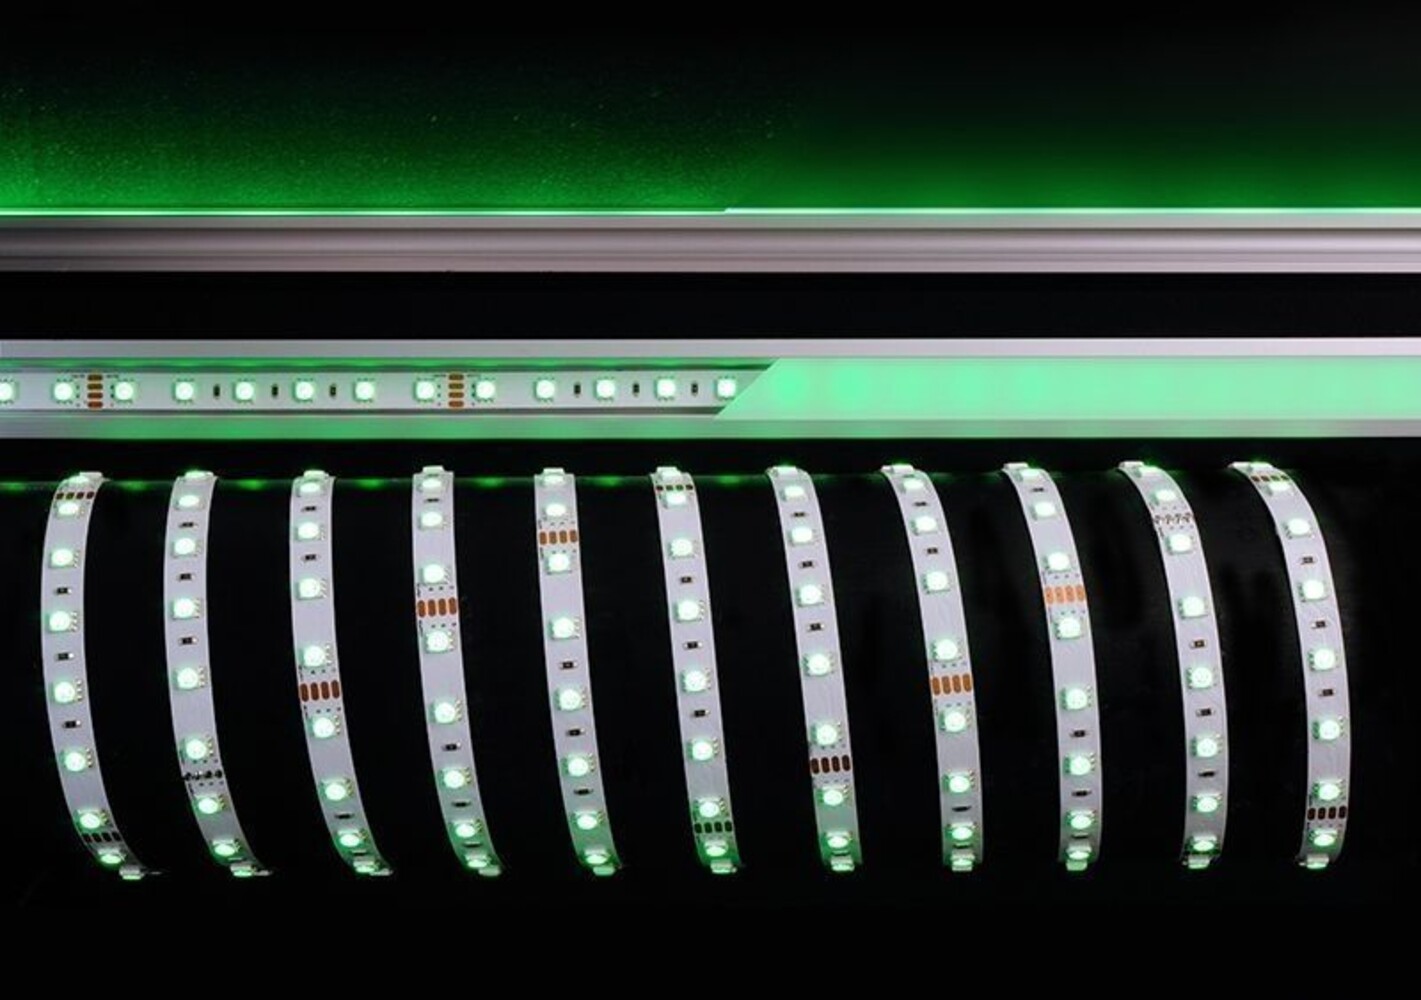 Hochwertiger und flexibler LED Streifen von der Marke Deko-Light in lebendigem RGB